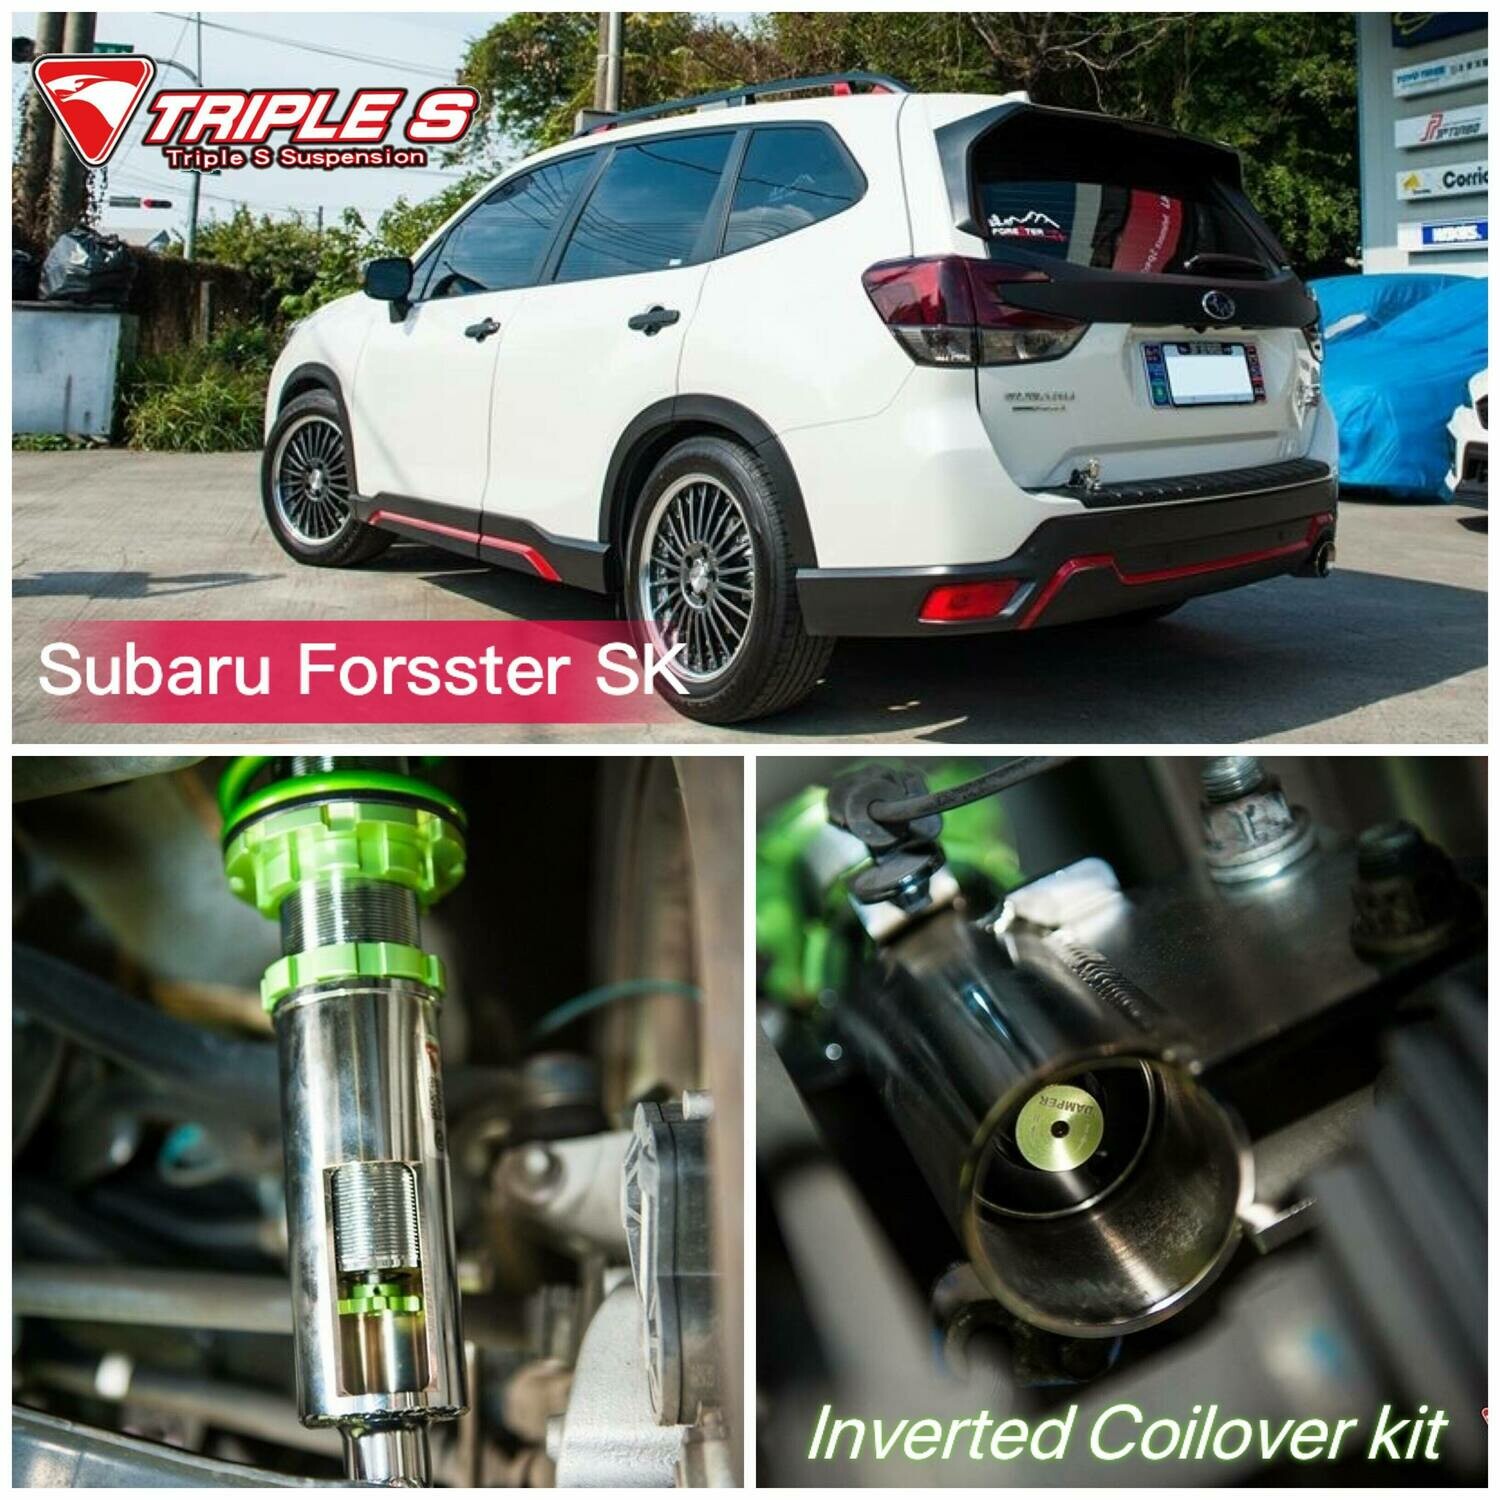 Subaru SJ Forester Triple S Inverted Coilover